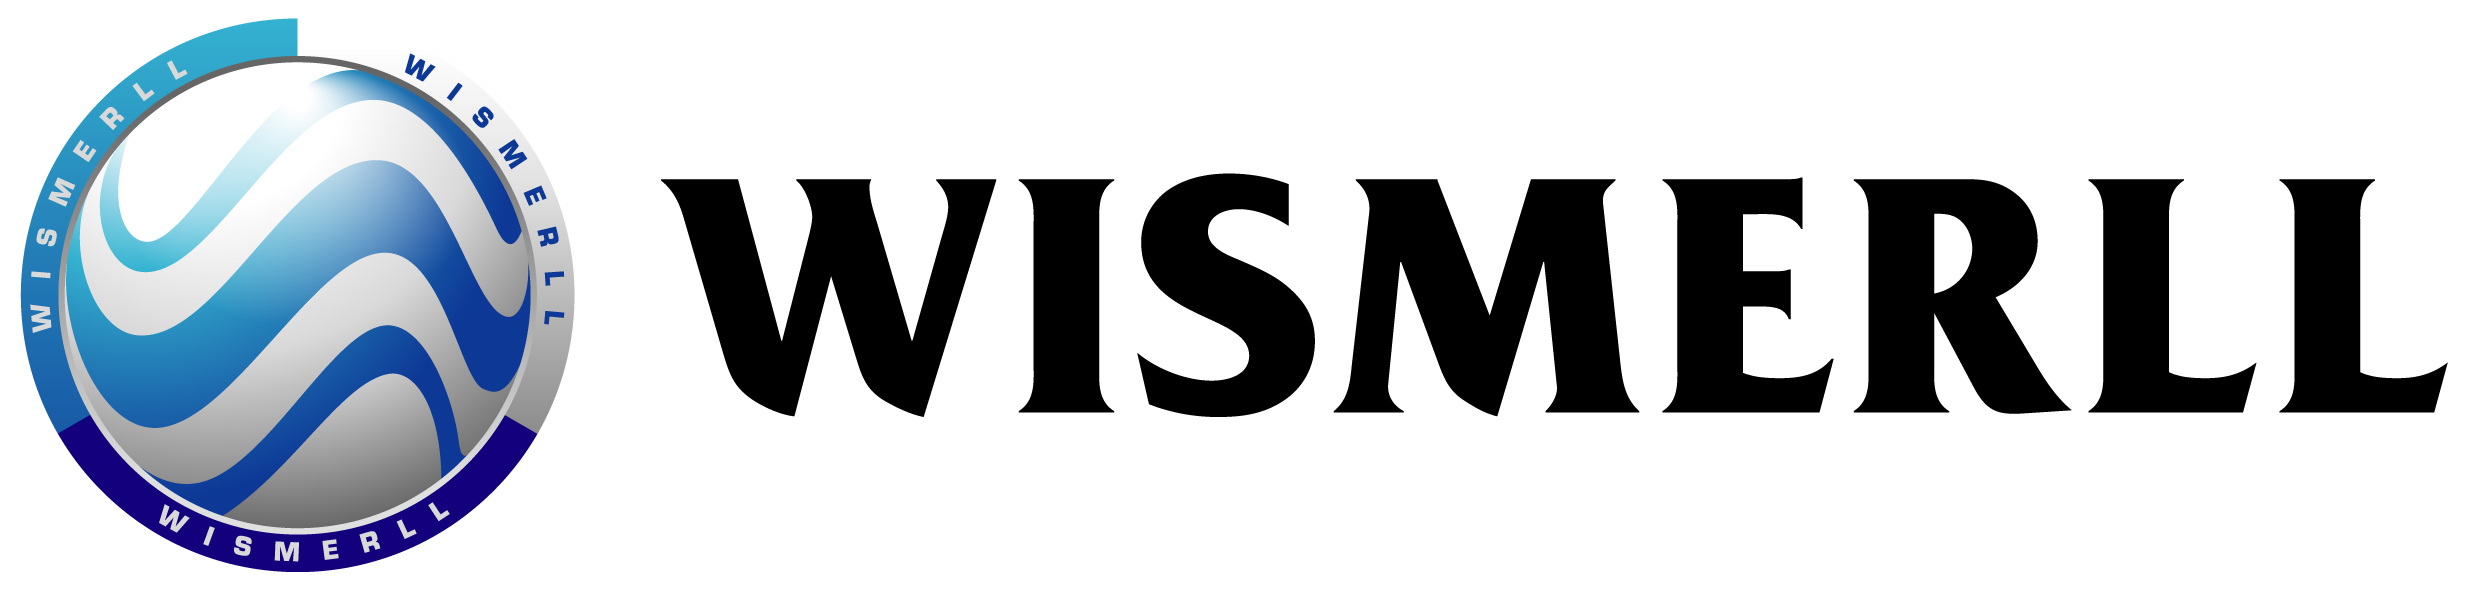 WISMERLL Co., Ltd. 